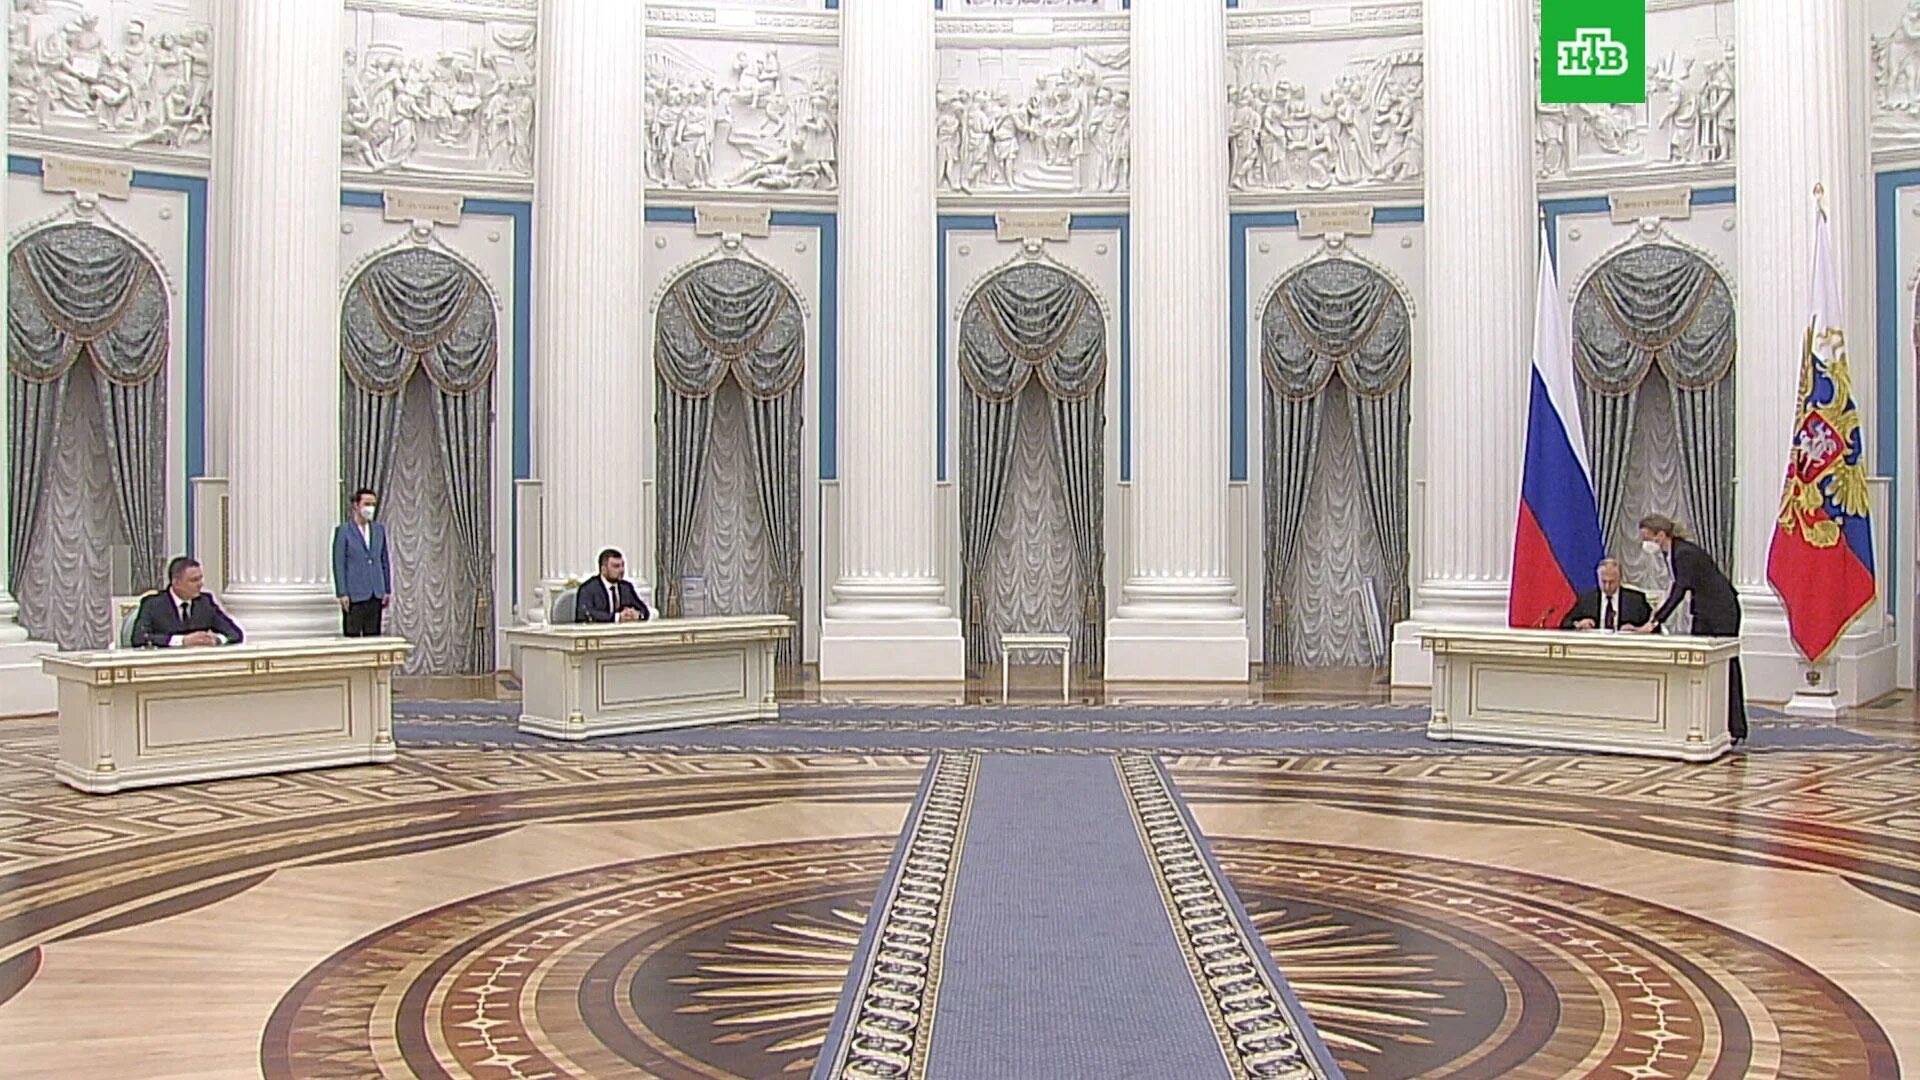 Риа республика. Екатерининский зал Кремля.